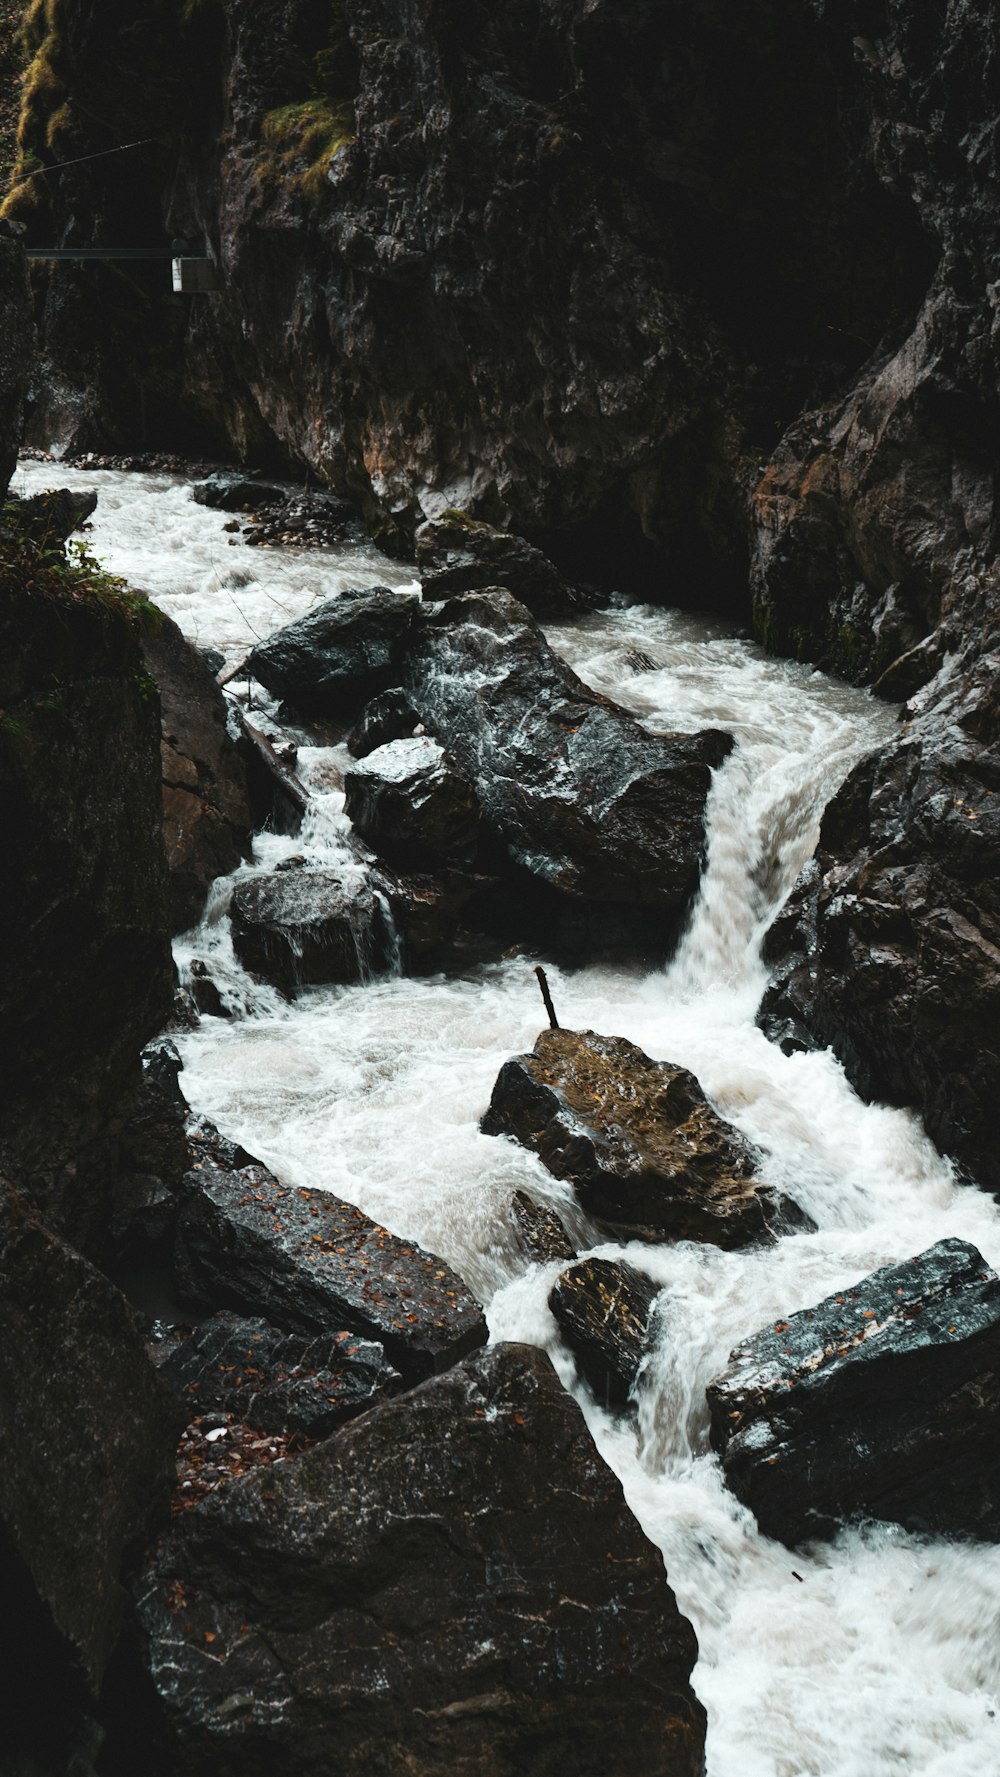 Un hombre parado en una roca junto a un río